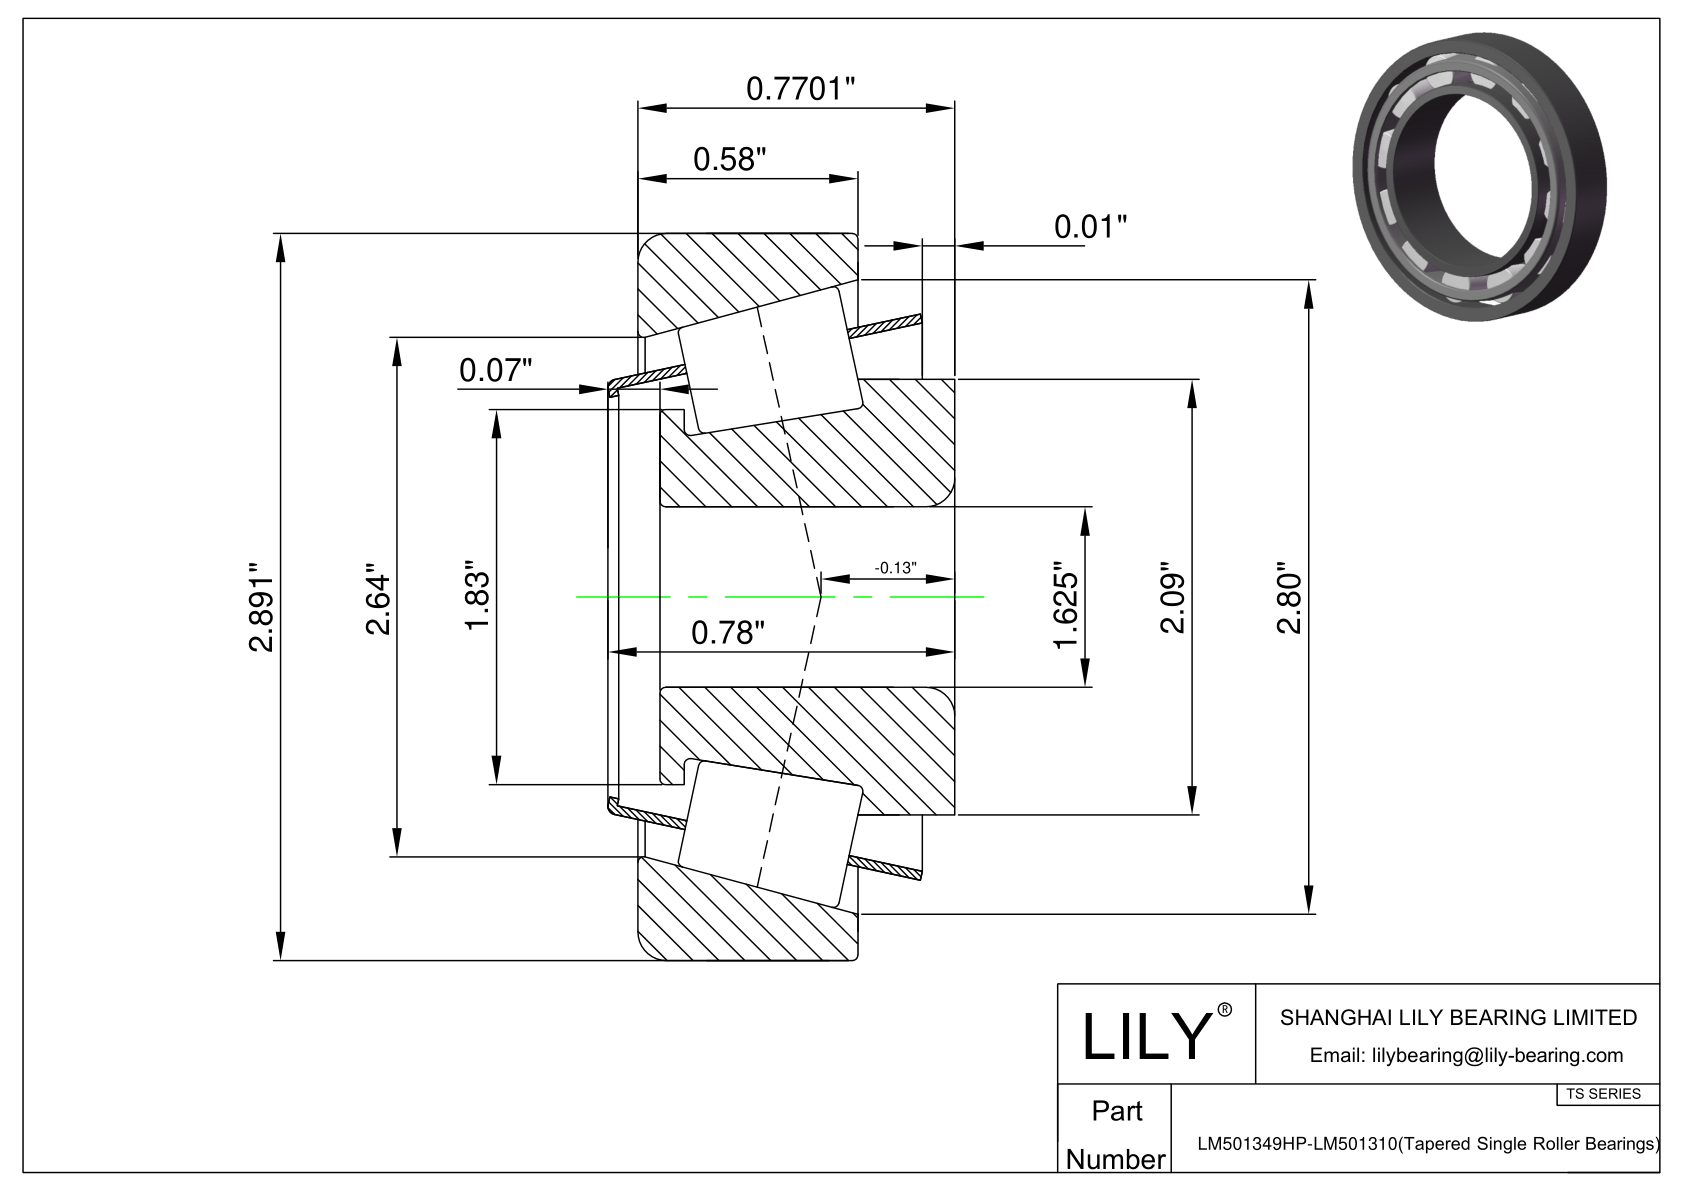 LM501349HP-LM501310 TS系列(圆锥单滚子轴承)(英制) CAD图形